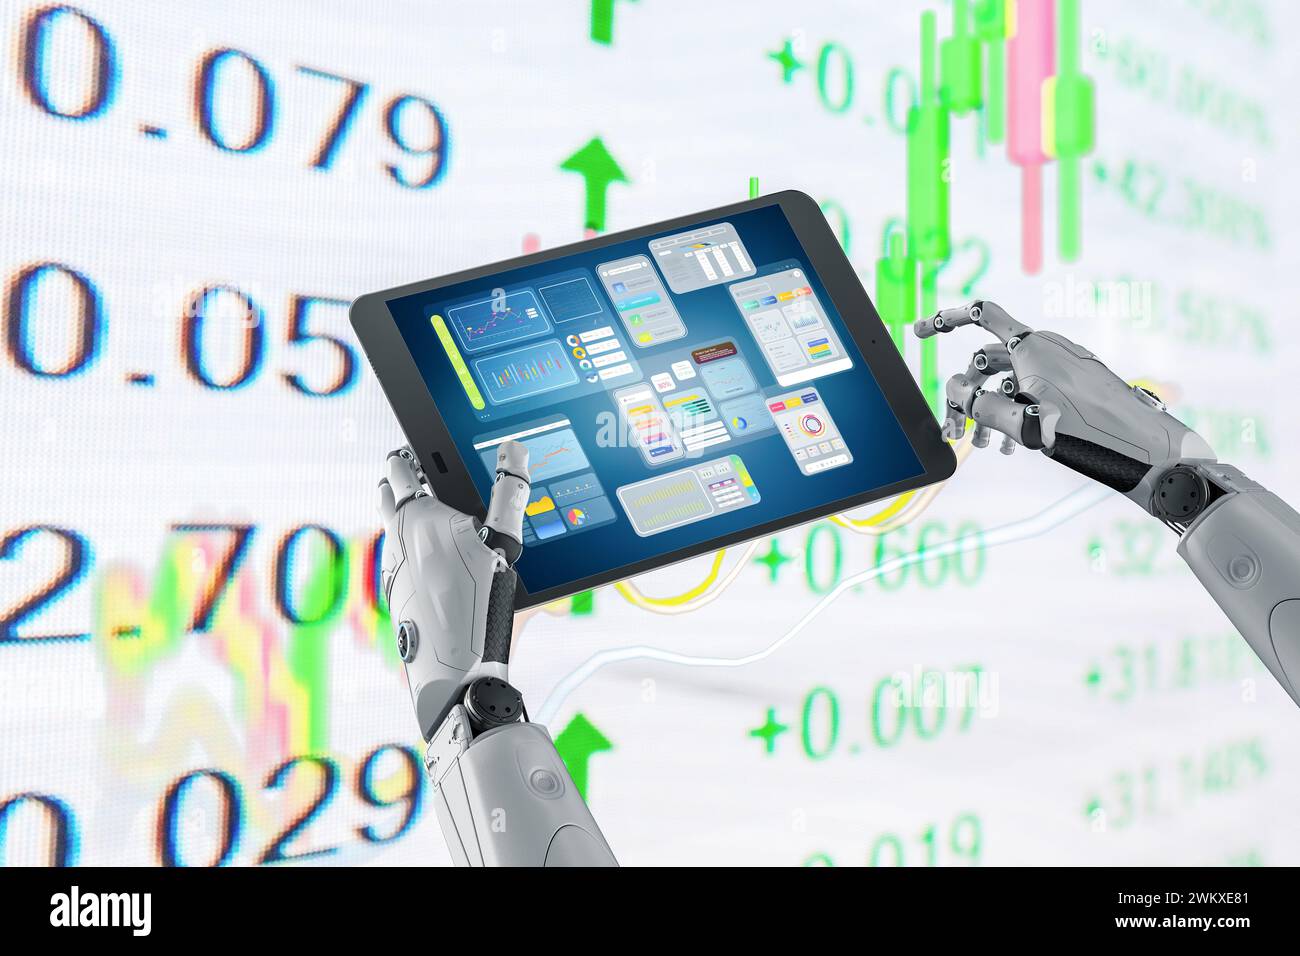 Concept de technologie financière avec robot humanoïde de rendu 3D analyser le marché boursier sur tablette Banque D'Images